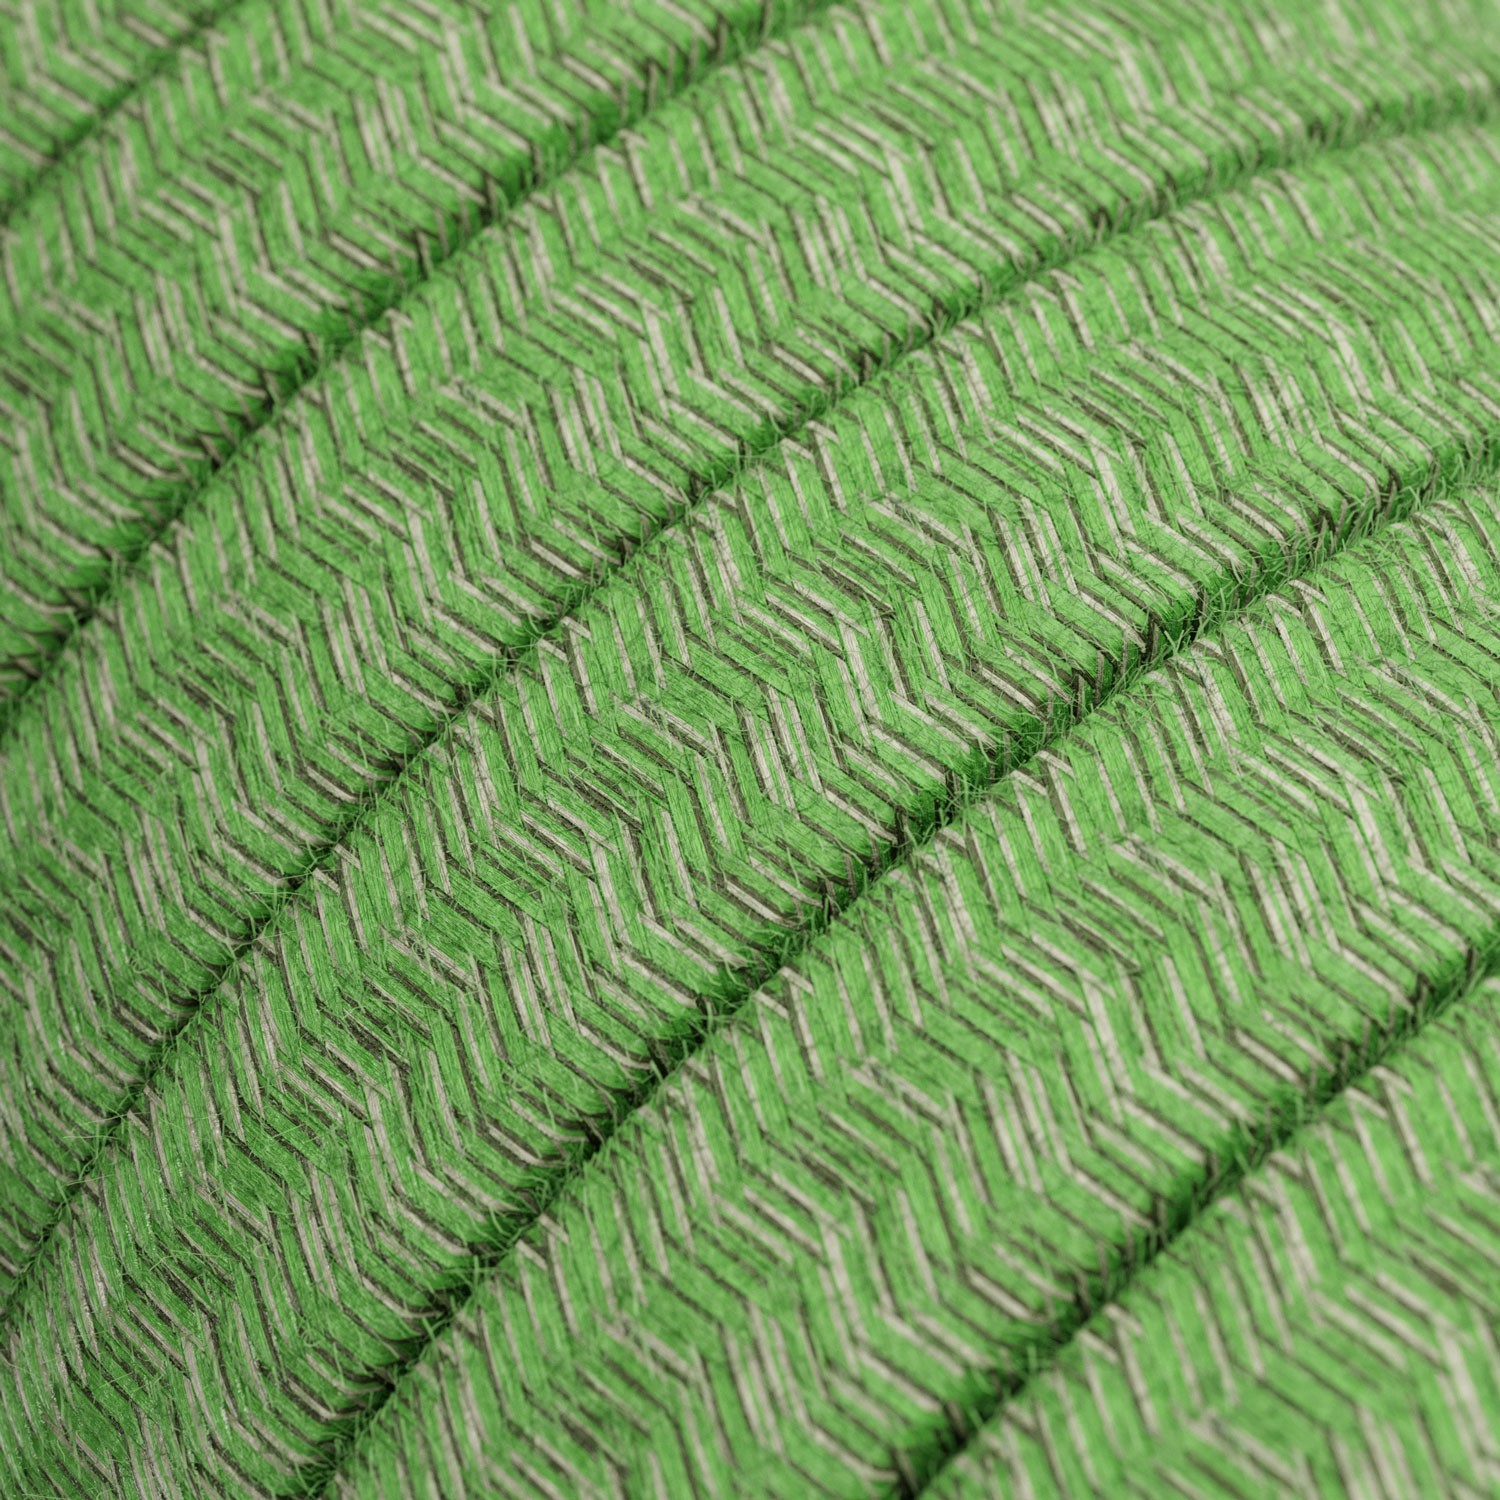 Textilní elektrický kabel pro světelný řetěz, pokrytý bavlnou - "zelený mix" CX08 - UV odolný